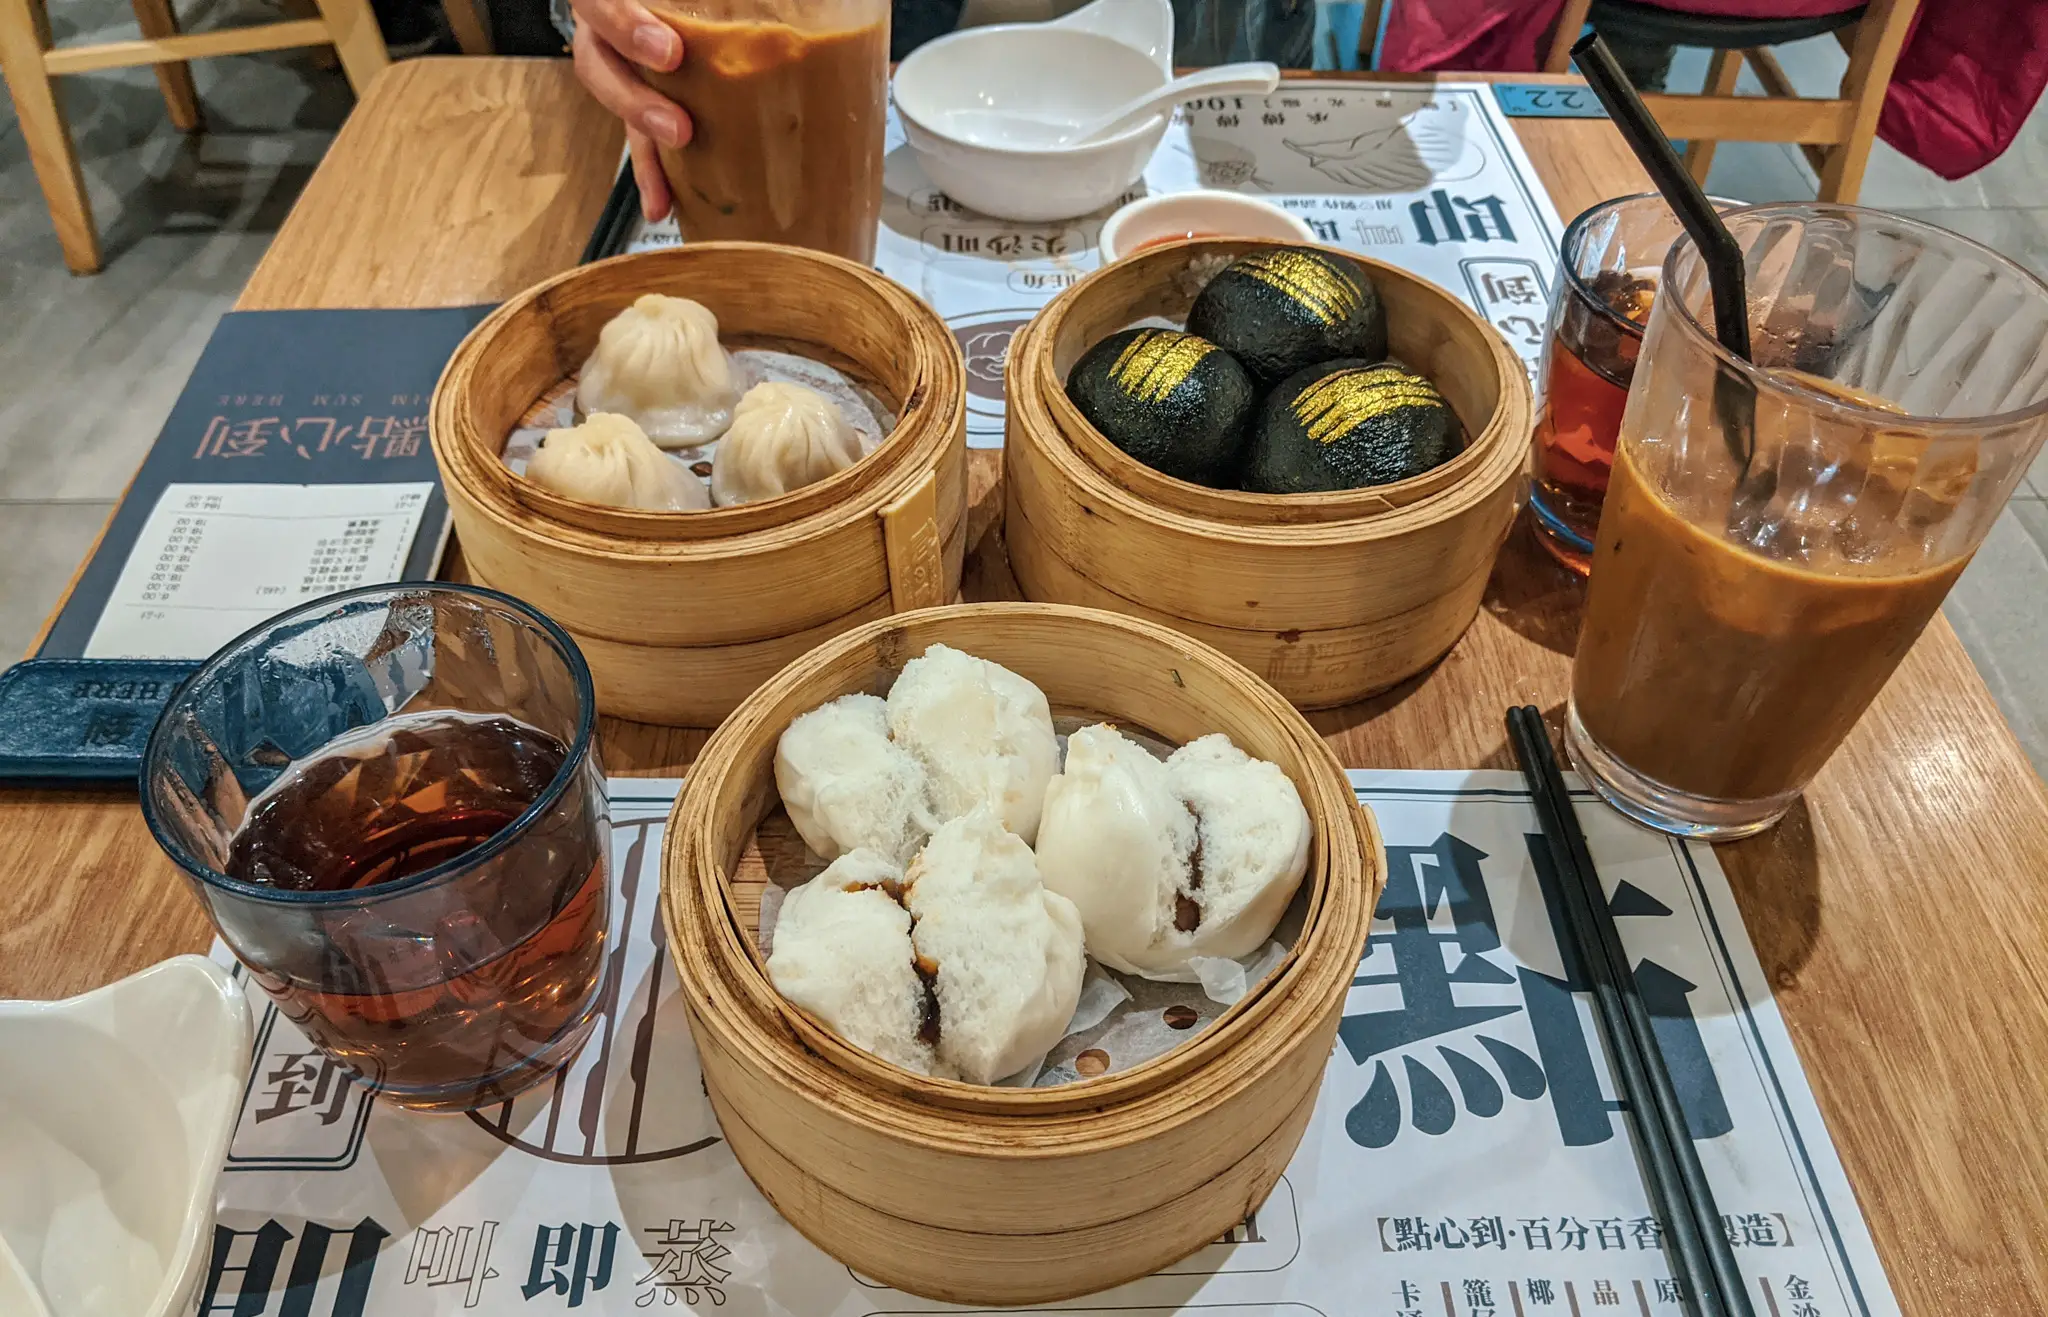 Tasty dim sum in Hong Kong